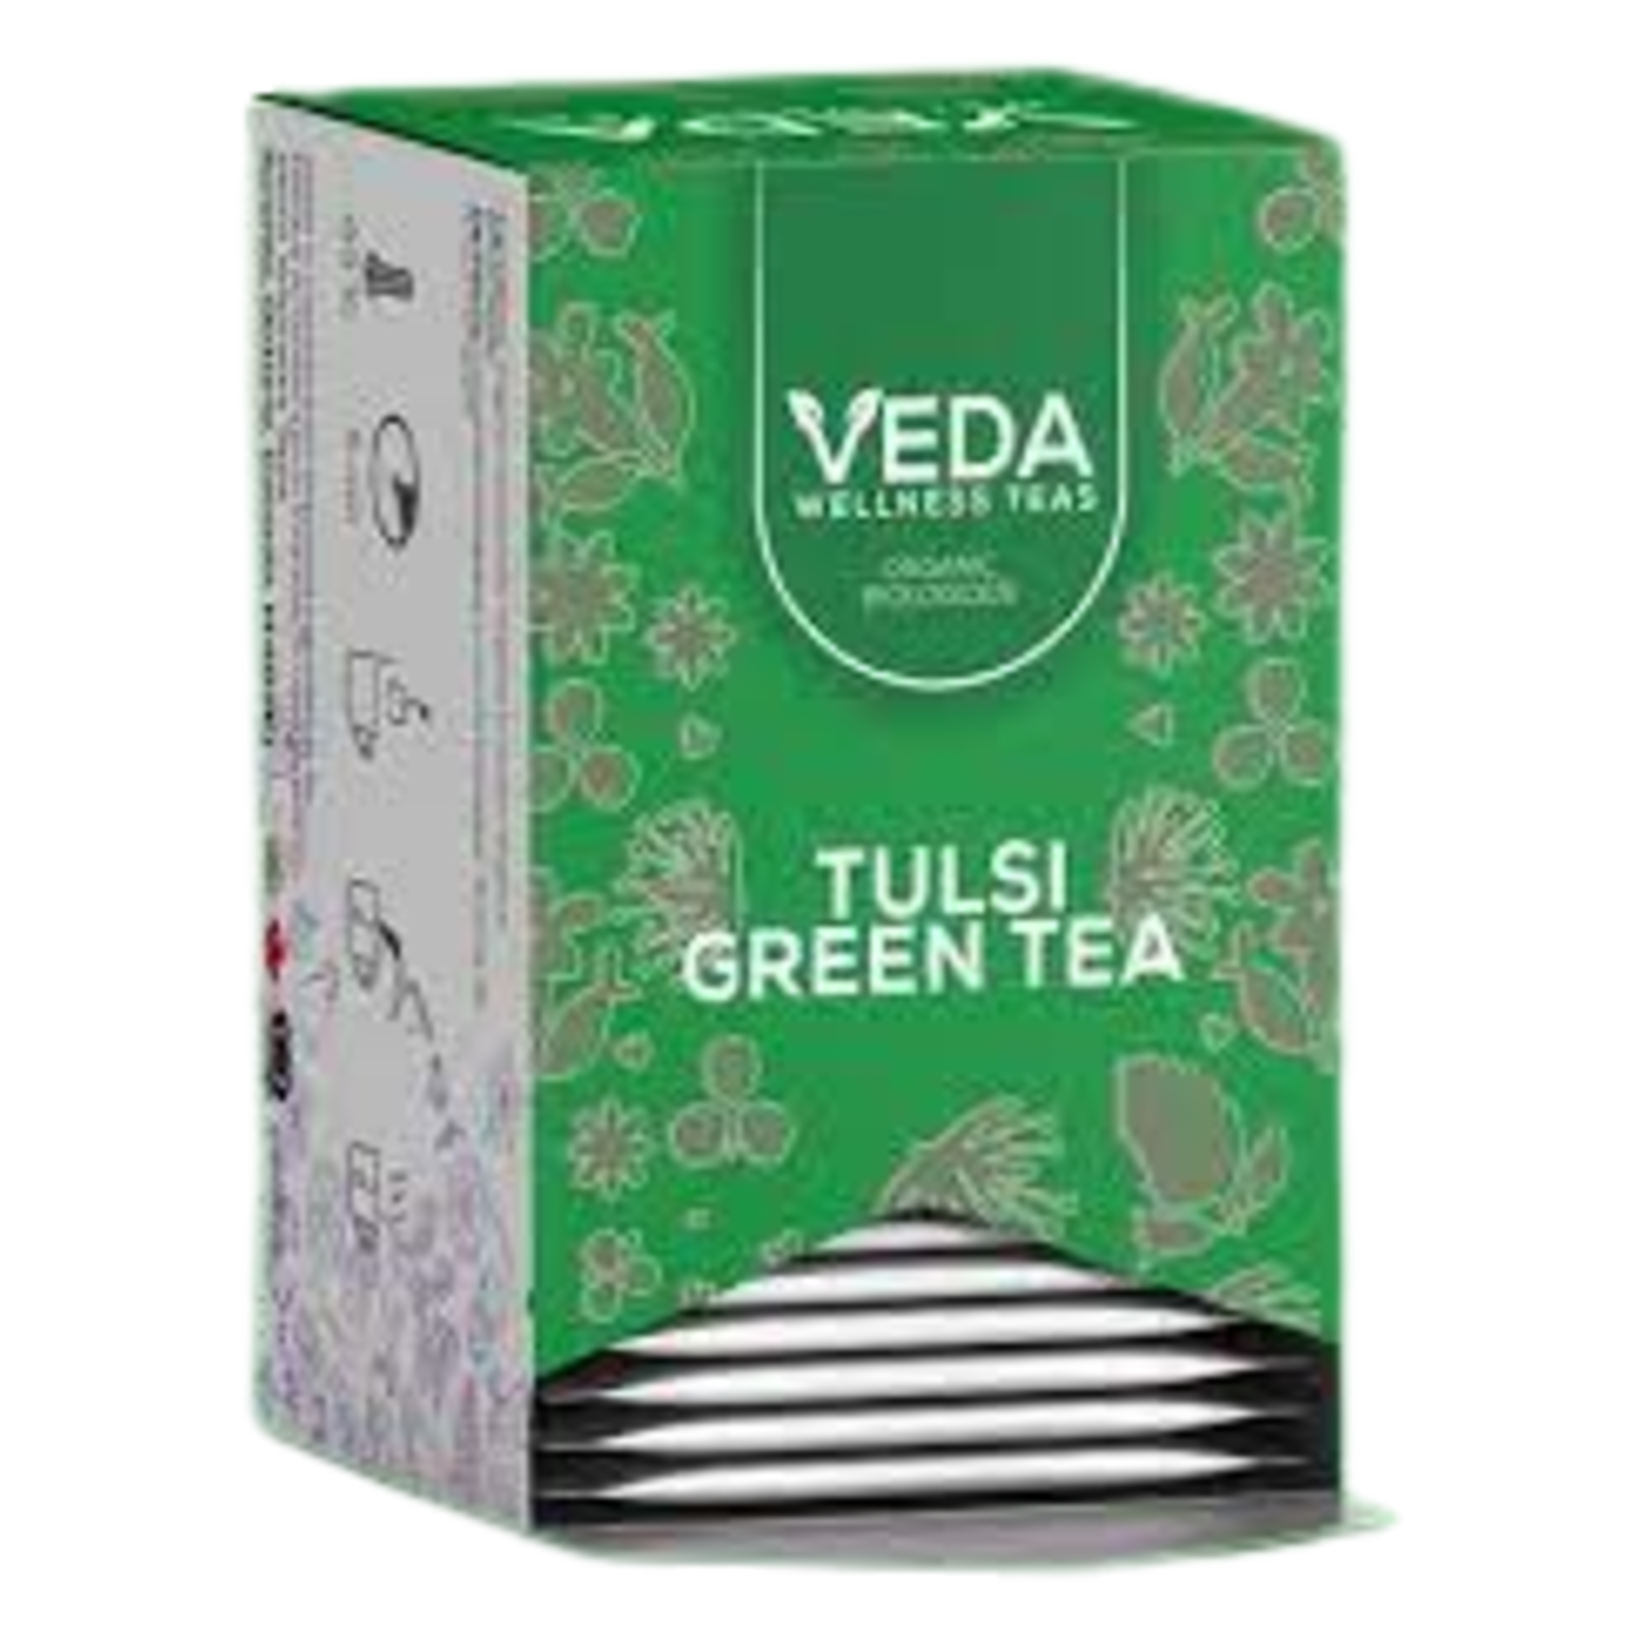 VEDA TULSI GREEN TEA